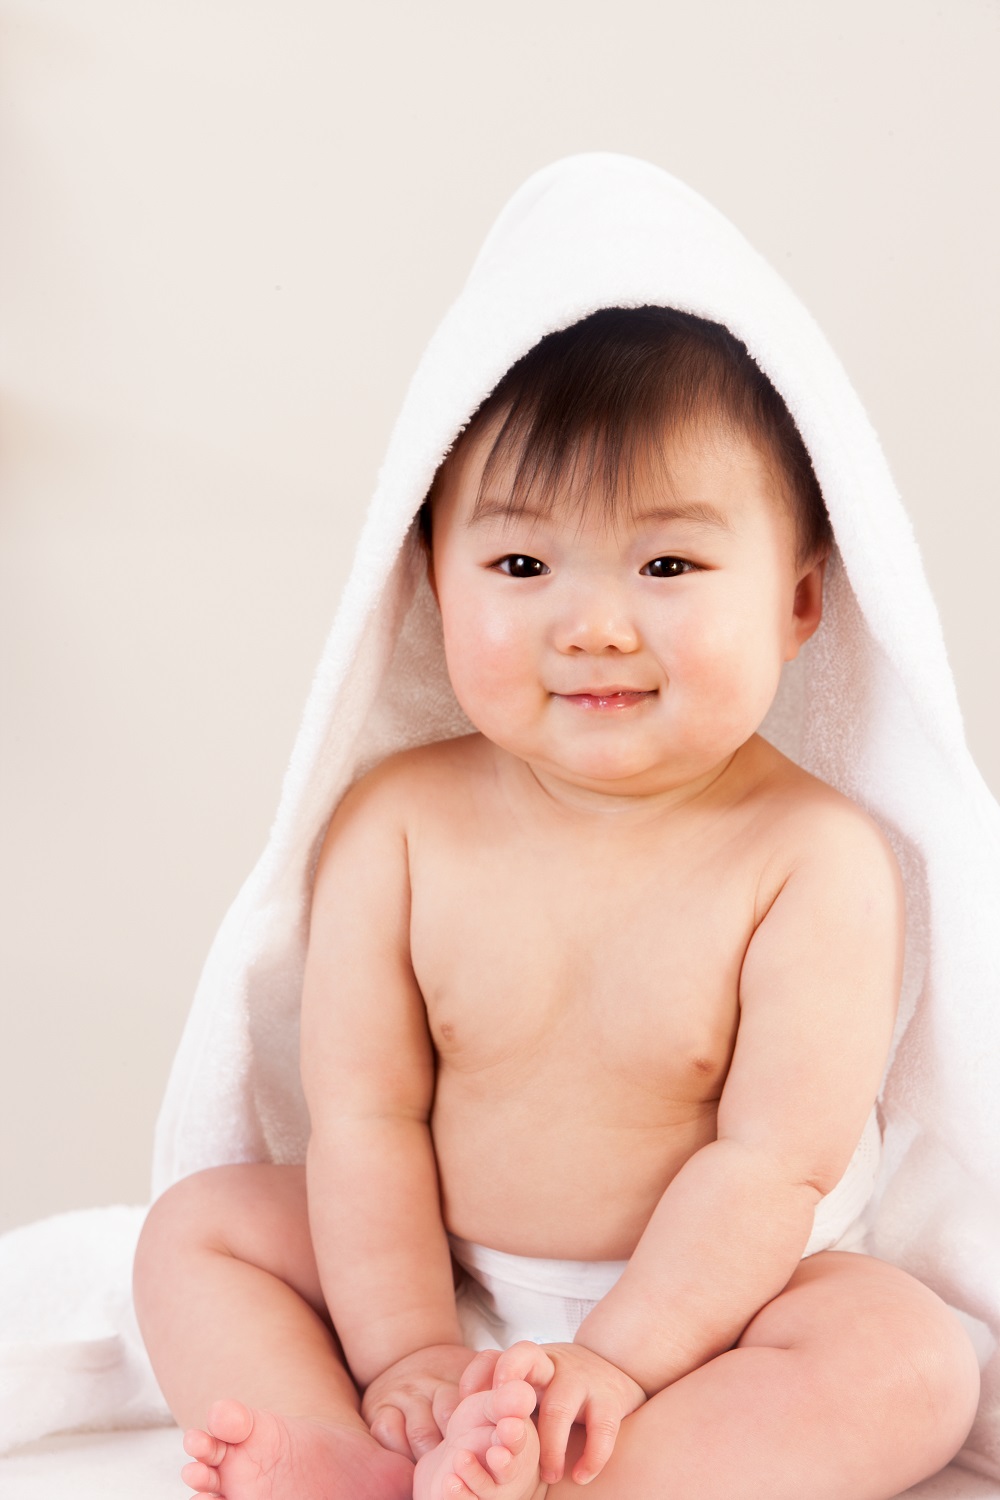 Tã có thành phần tự nhiên sẽ giúp bé thoải mái vui chơi mà không hằm bí hay hăm đỏ. Ảnh: Shutterstock